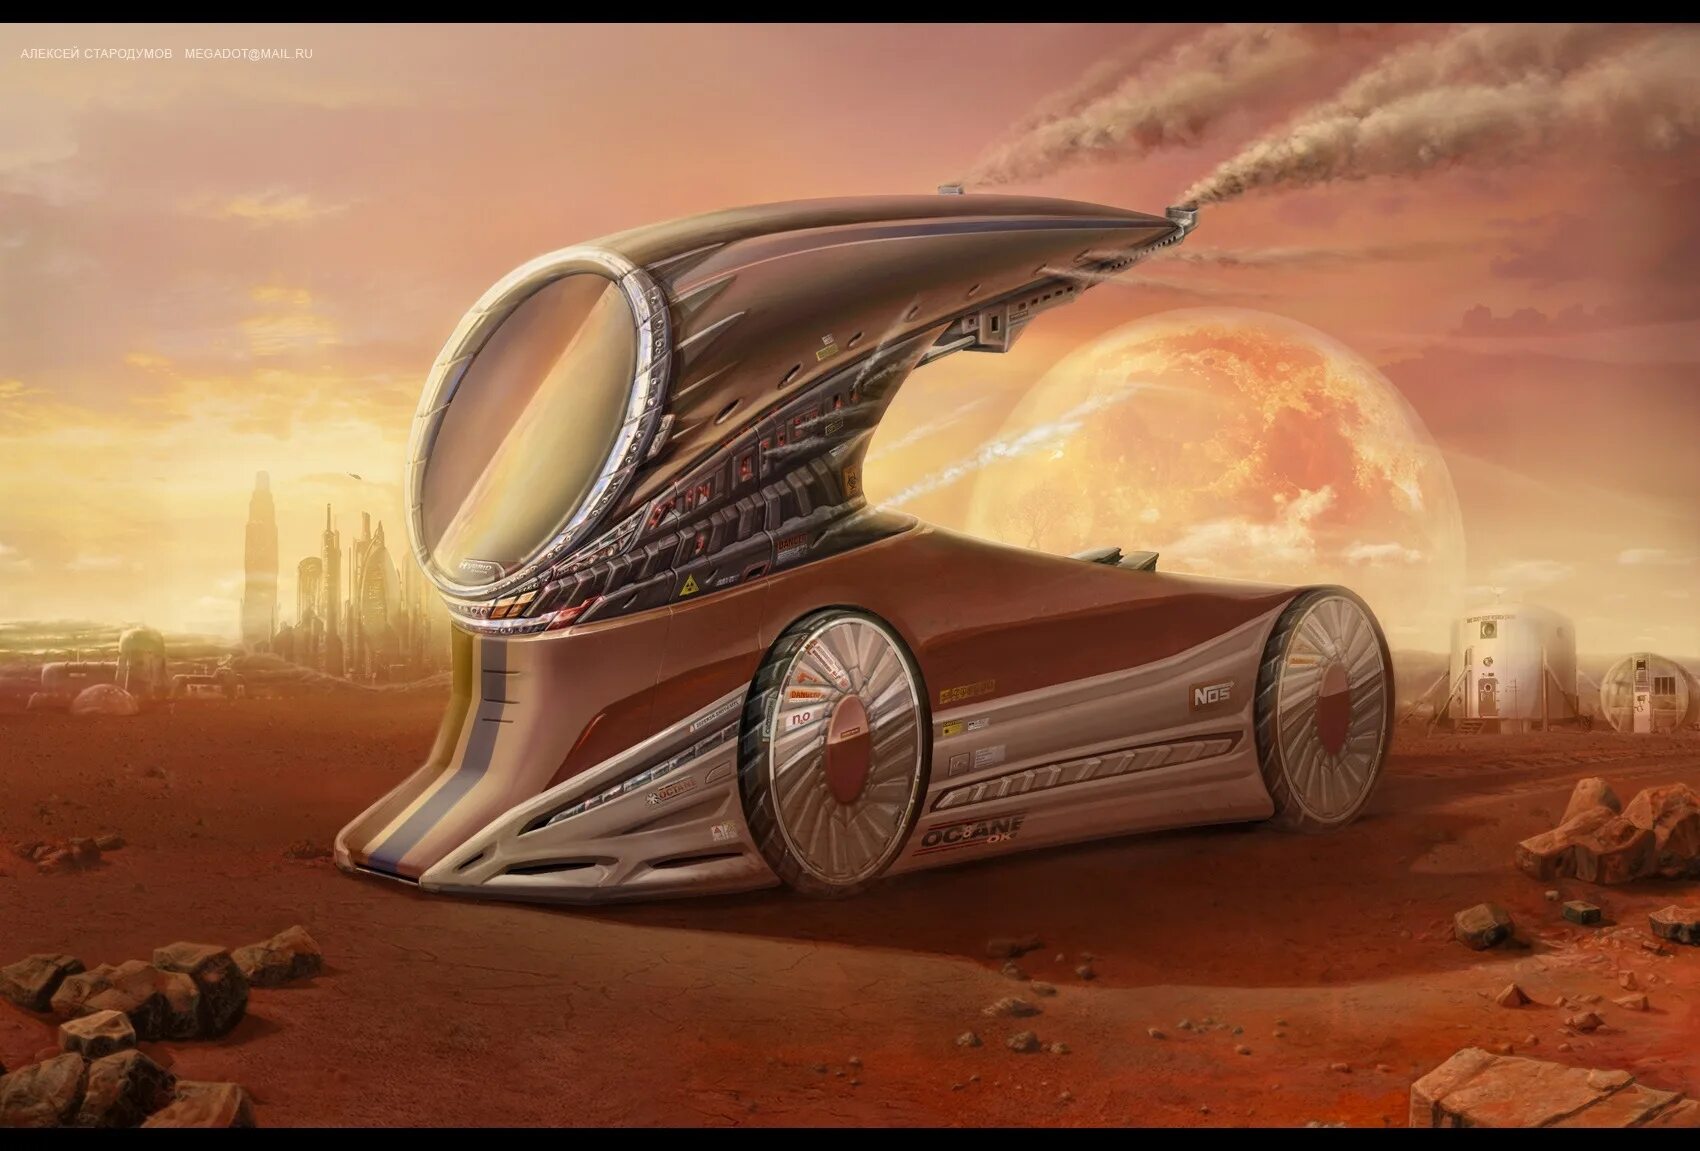 Средство будущее. Фантастический транспорт. Фантастические машины. Фантастический транспорт будущего. Космический автомобиль.